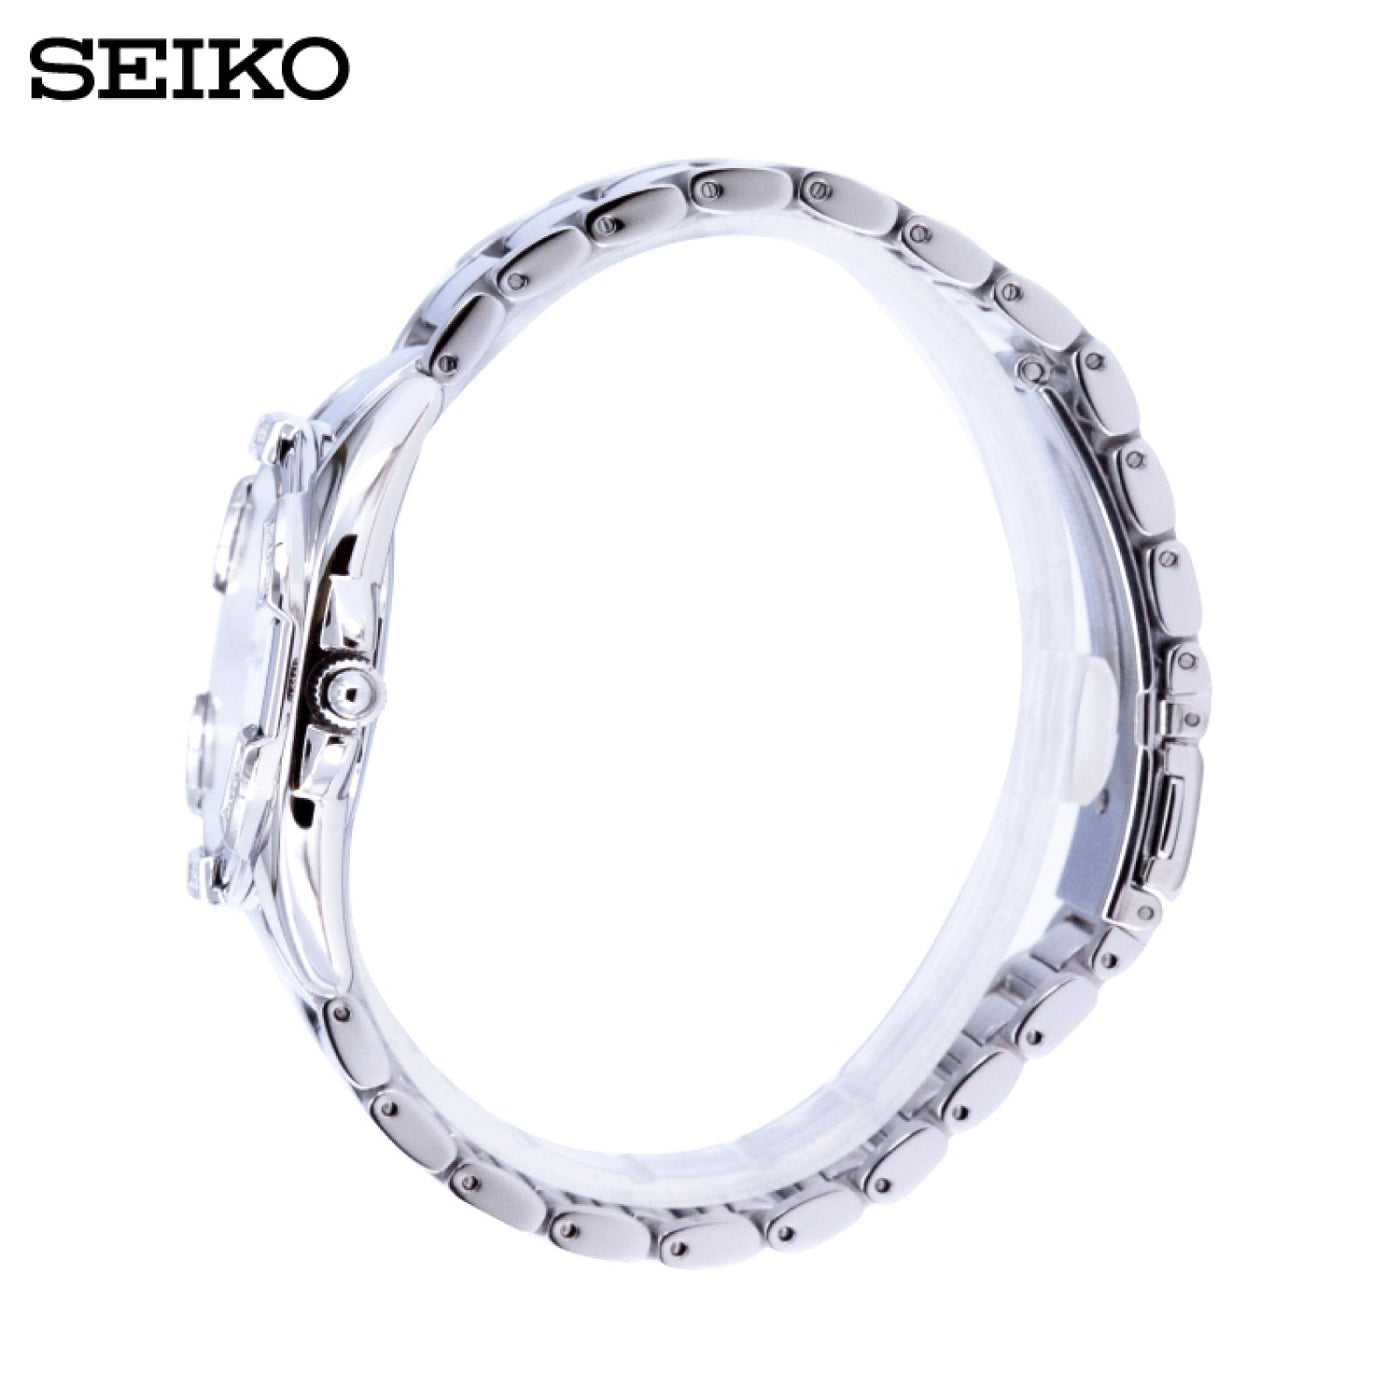 Seiko (ไซโก) นาฬิกาผู้หญิง รุ่น Conceptual SKK881P ระบบควอตซ์ ขนาดตัวเรือน 33 มม.